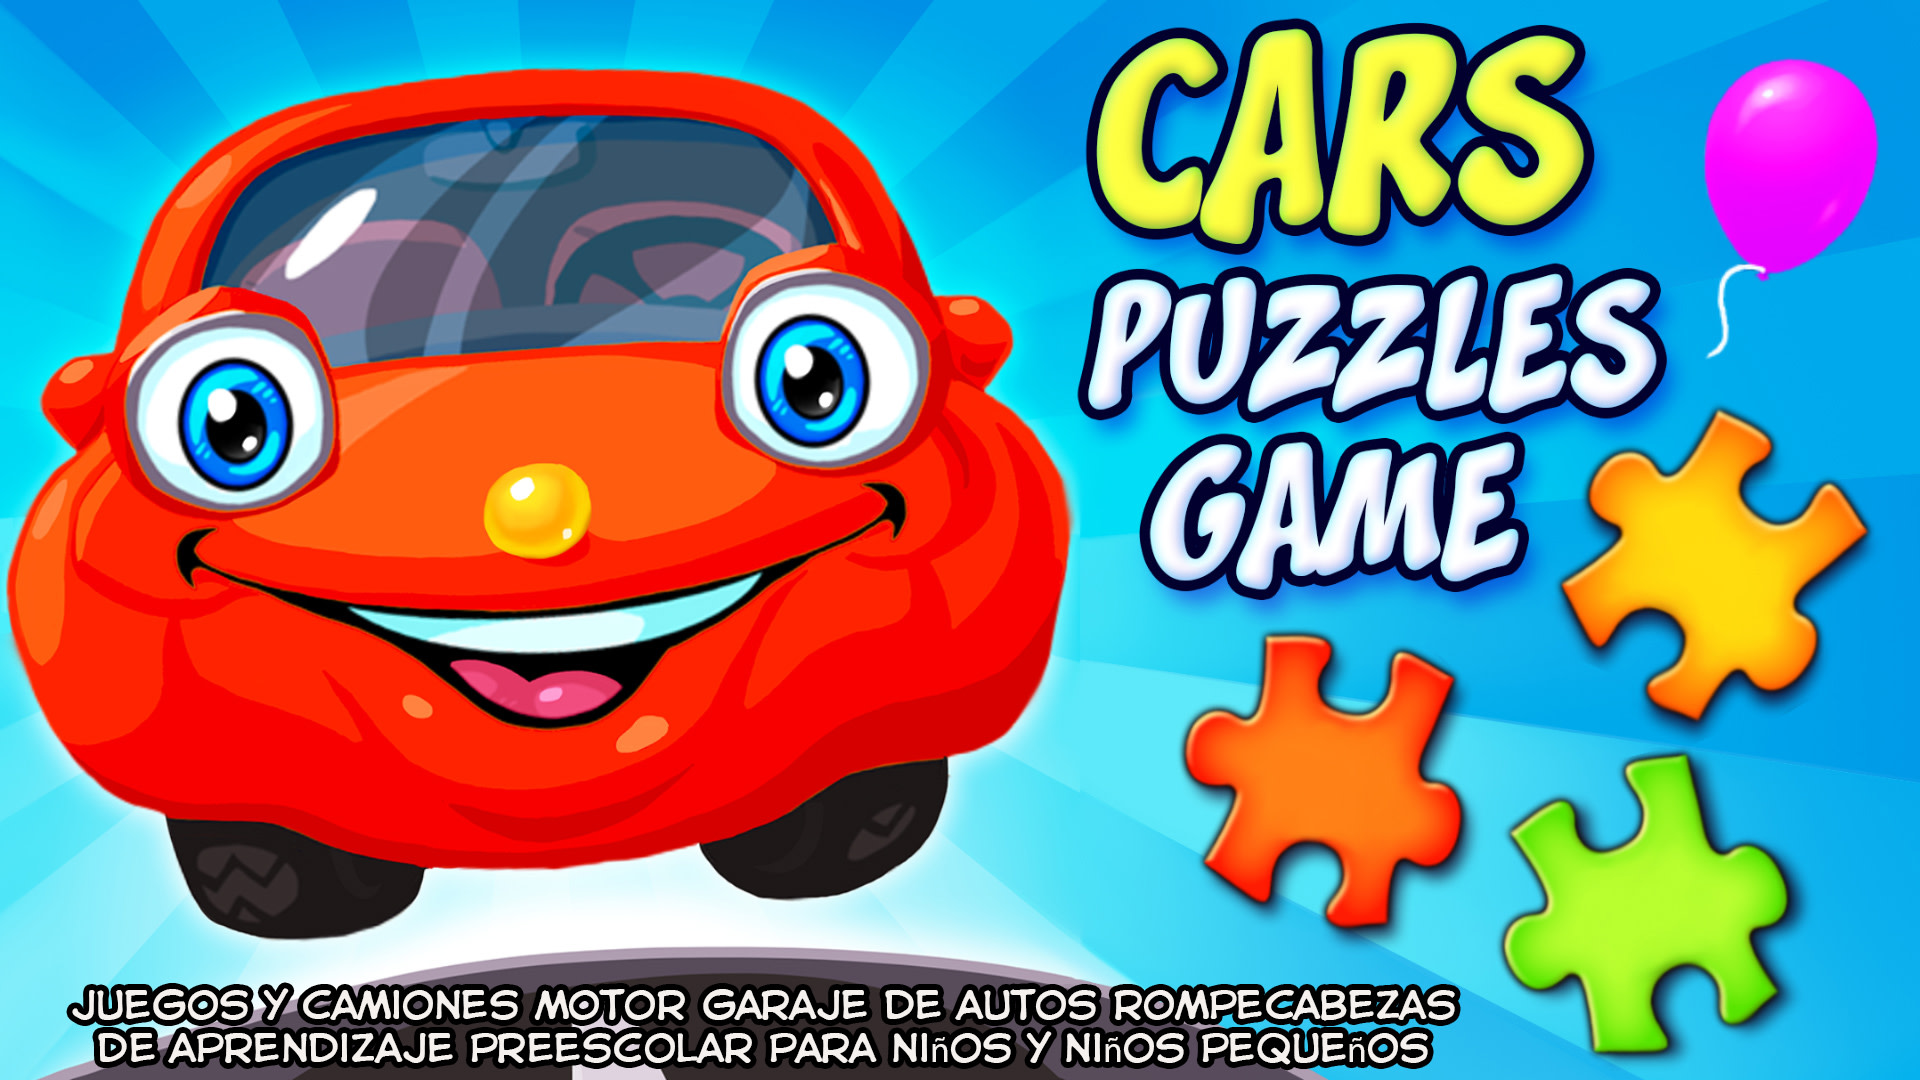 Cars Puzzles Game - juegos y camiones motor garaje de autos rompecabezas de aprendizaje preescolar para niños y niños pequeños 